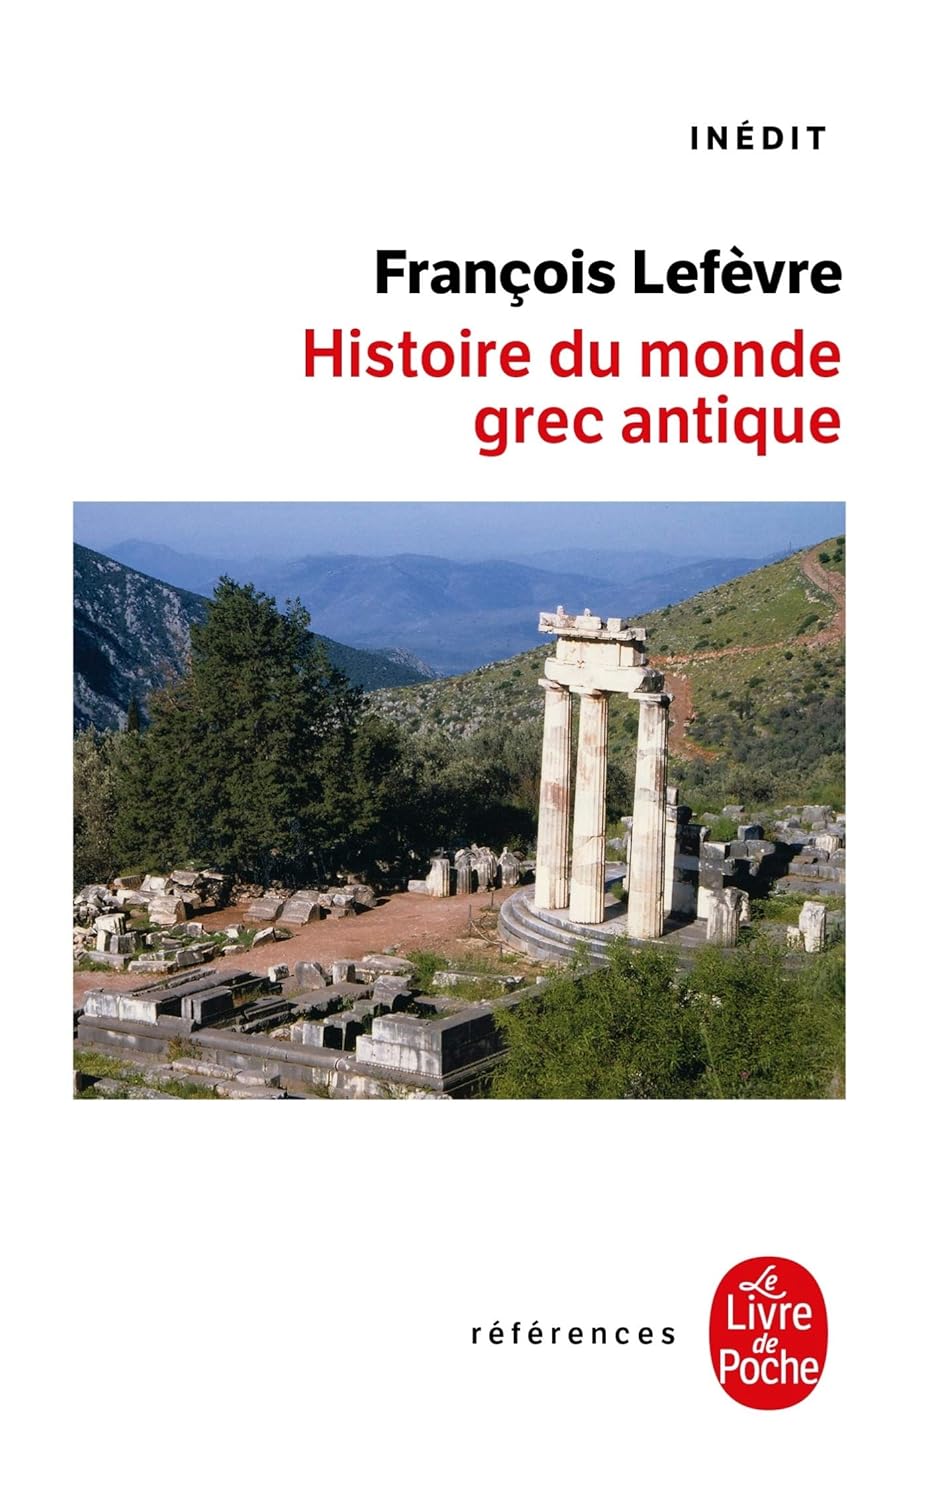 François Lefèvre, Histoire du monde grec antique, Le Livre de Poche, 2007